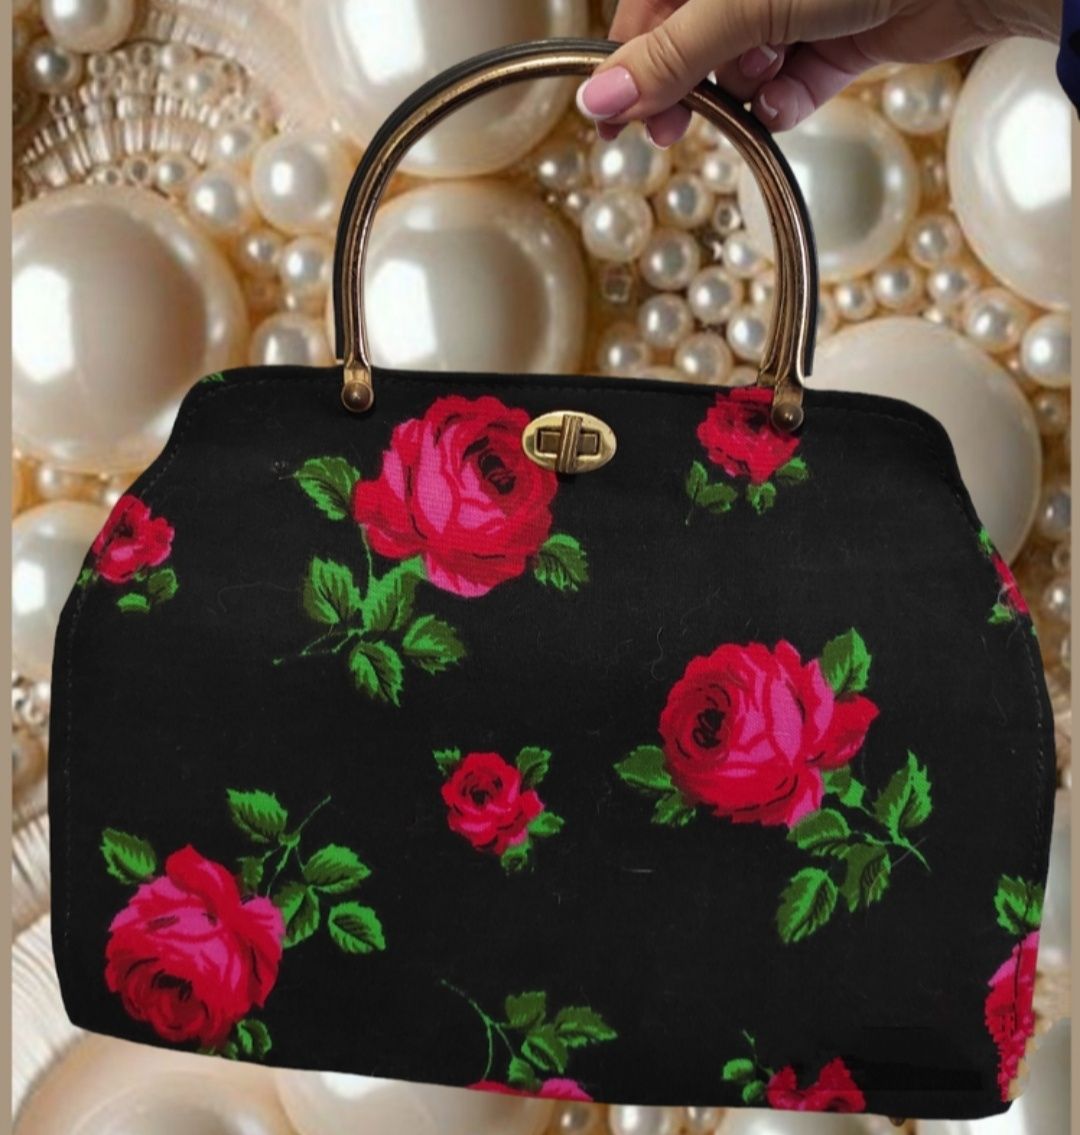 Стильная текстильная сумка, сумочка с шикарным принтом цветов на черно